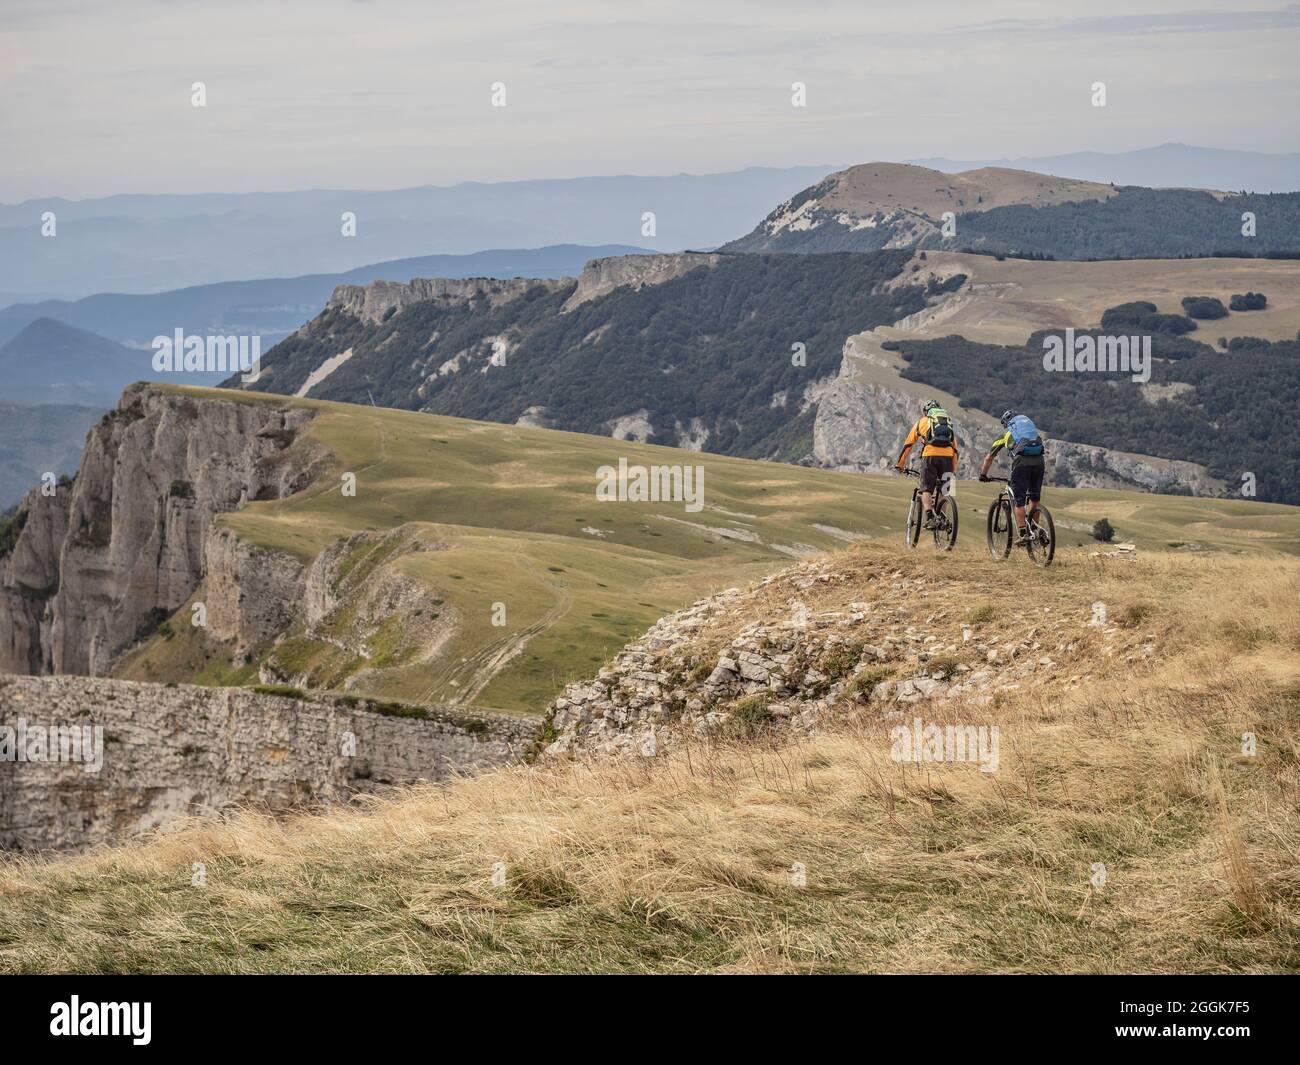 Mountain bikers on single trails on tour through the Hauts-Plateaux du Vercors nature reserve, Auvergne-Rhône-Alpes. At the edge between Pas des Ècondus and Pas de l'Èchelette near the Col du Rousset - view to the south. Stock Photo